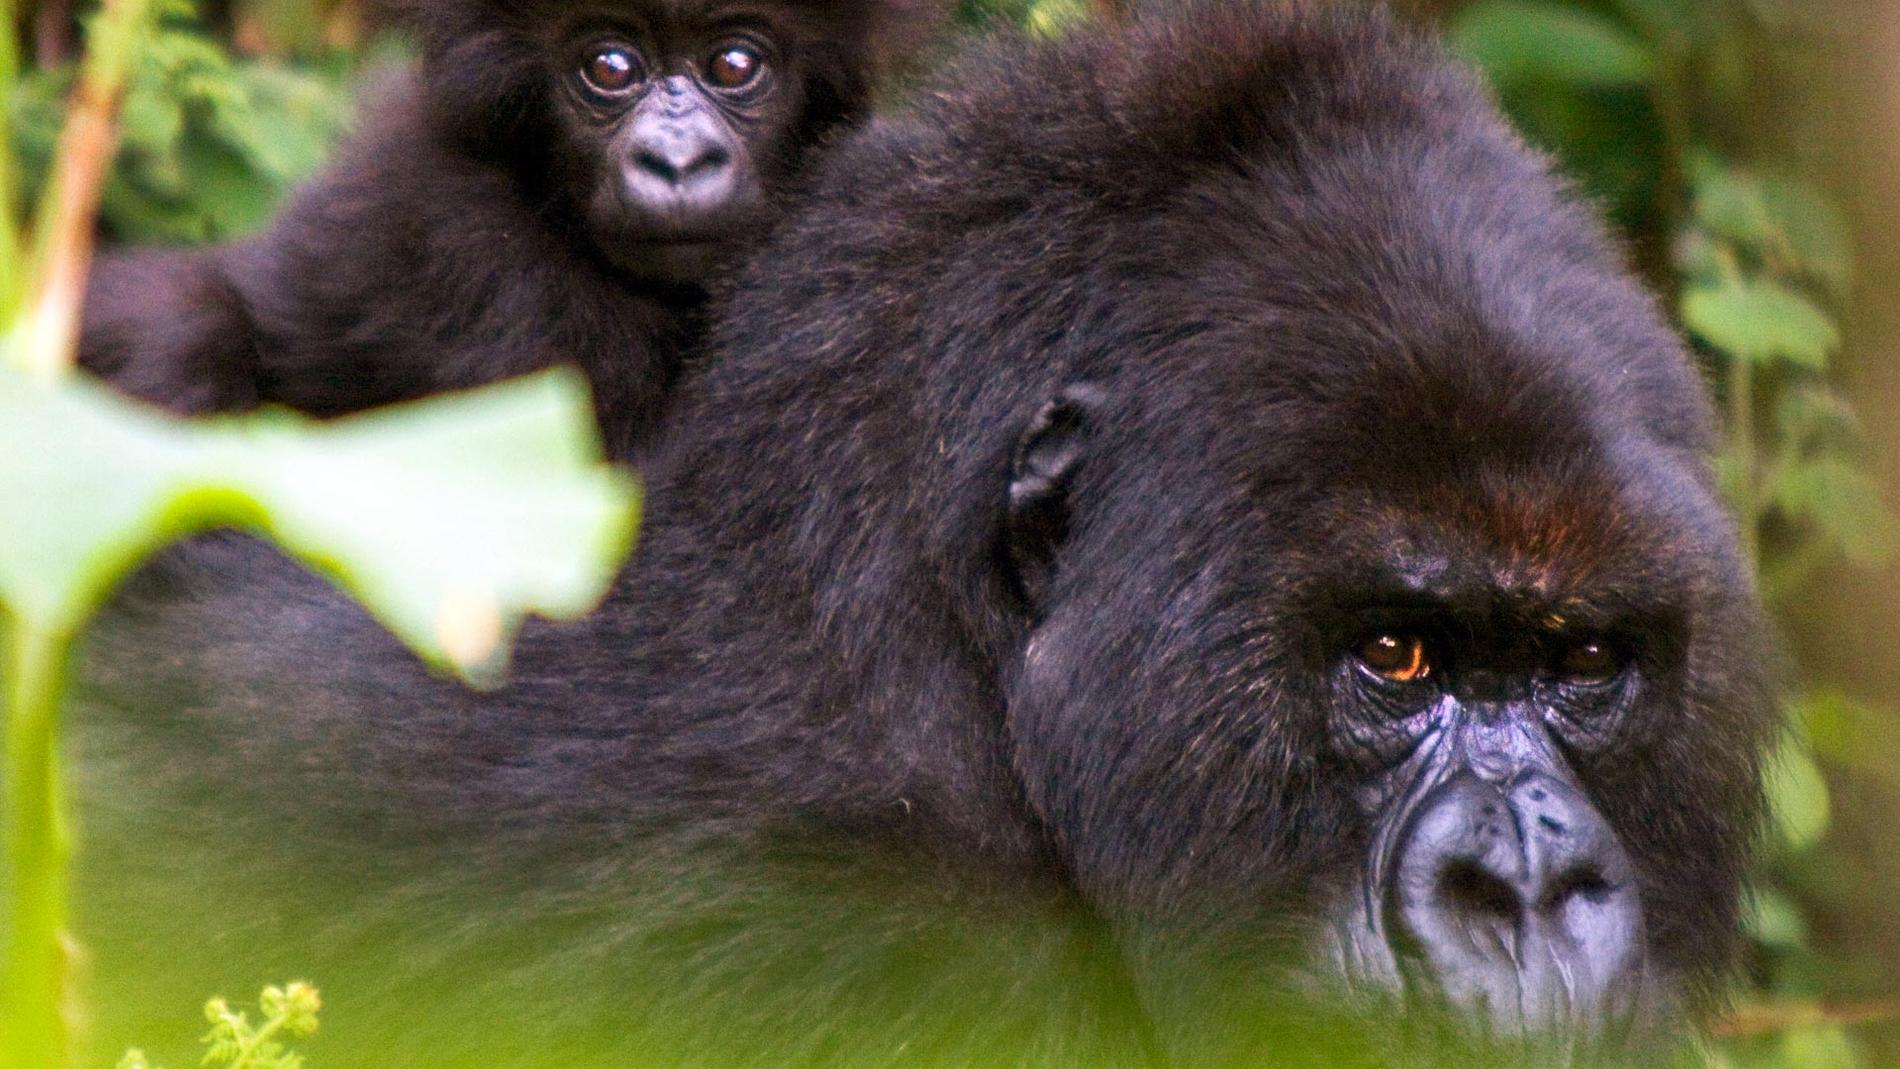 Gorillornas nära släktskap med oss människor märks tydligt. Deras ansiktsuttryck, kroppsspråk och sättet de tittar på en, allt känns väldigt mänskligt.